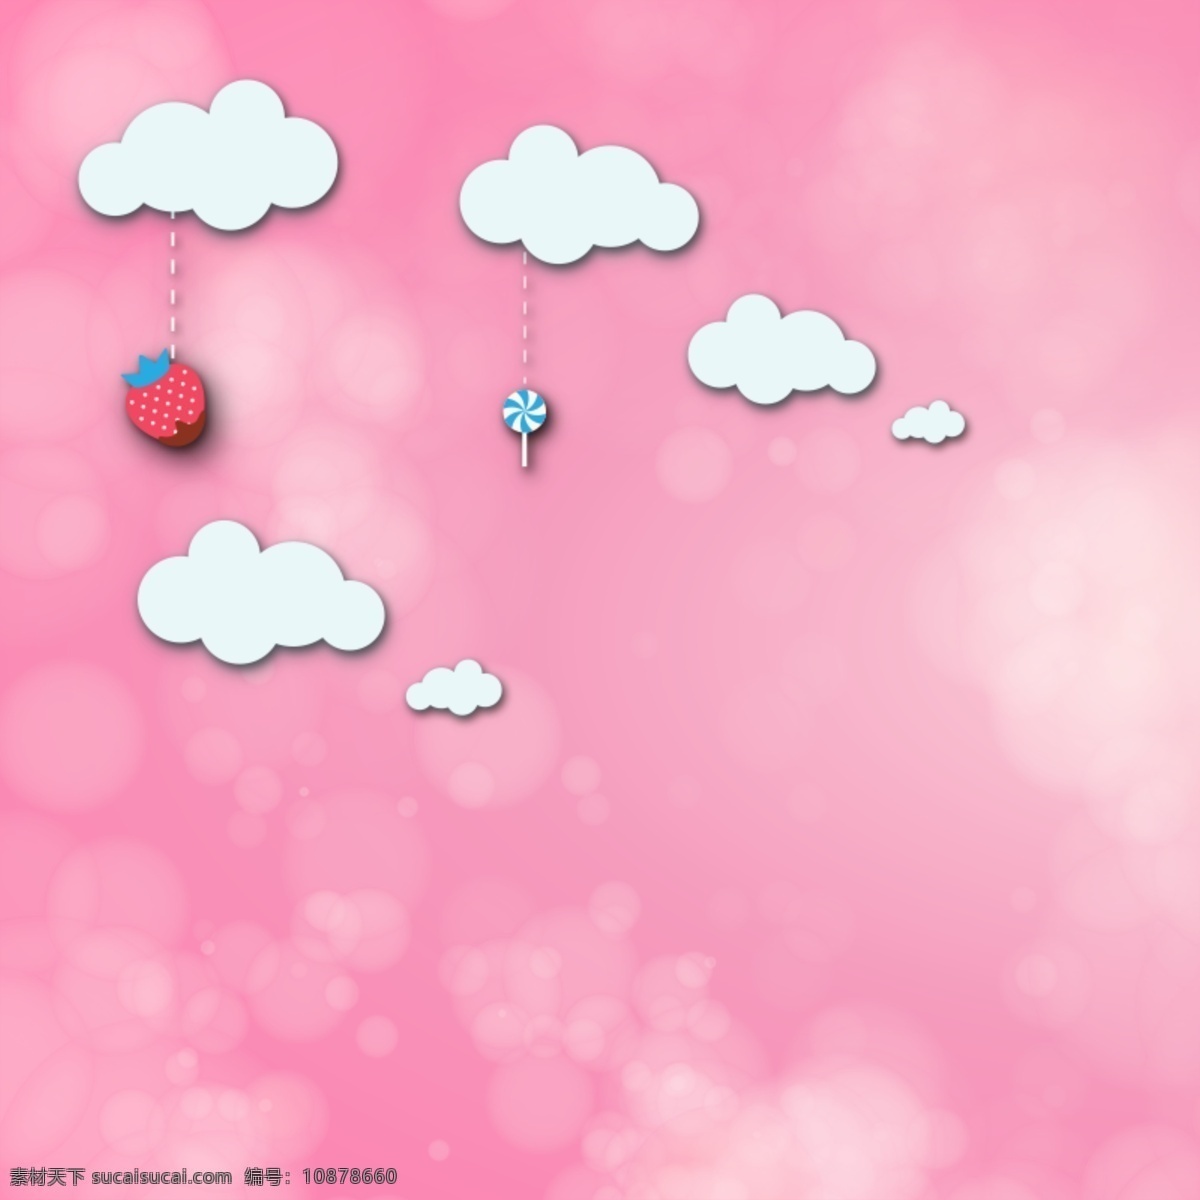 可爱 草莓 糖果 粉色 底 图 白云 矢量图 粉色背景图